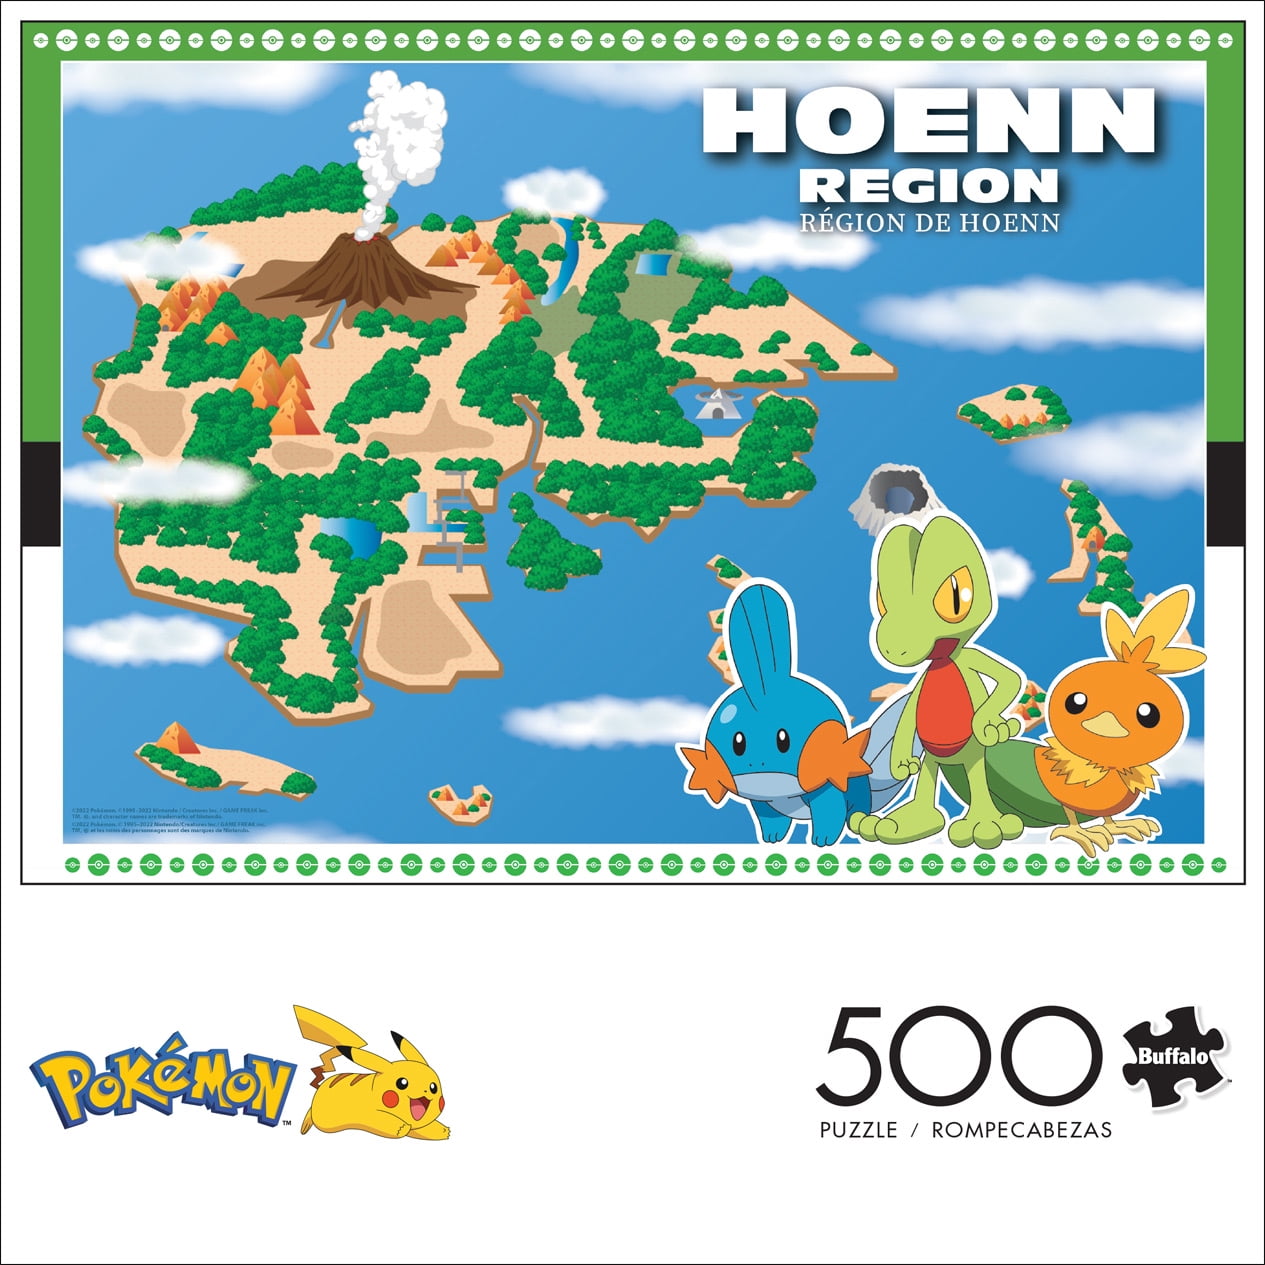 Region of Hoenn